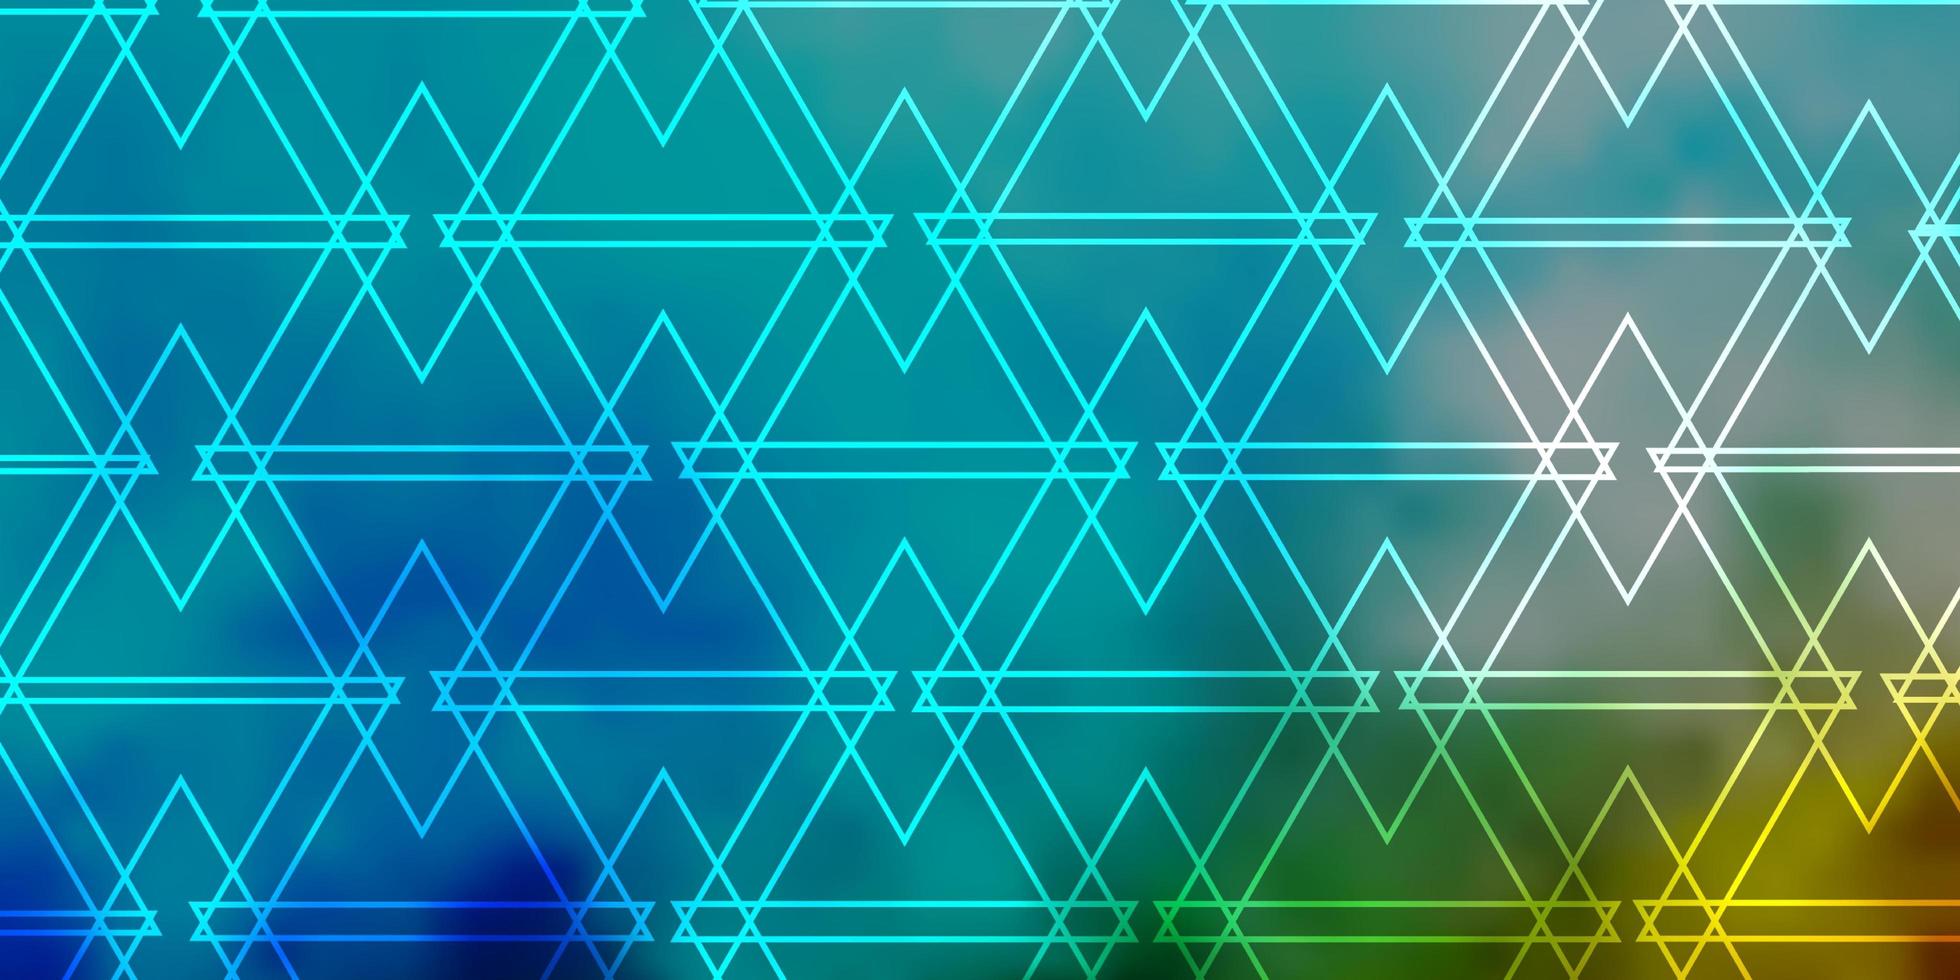 sfondo vettoriale azzurro, verde con triangoli.